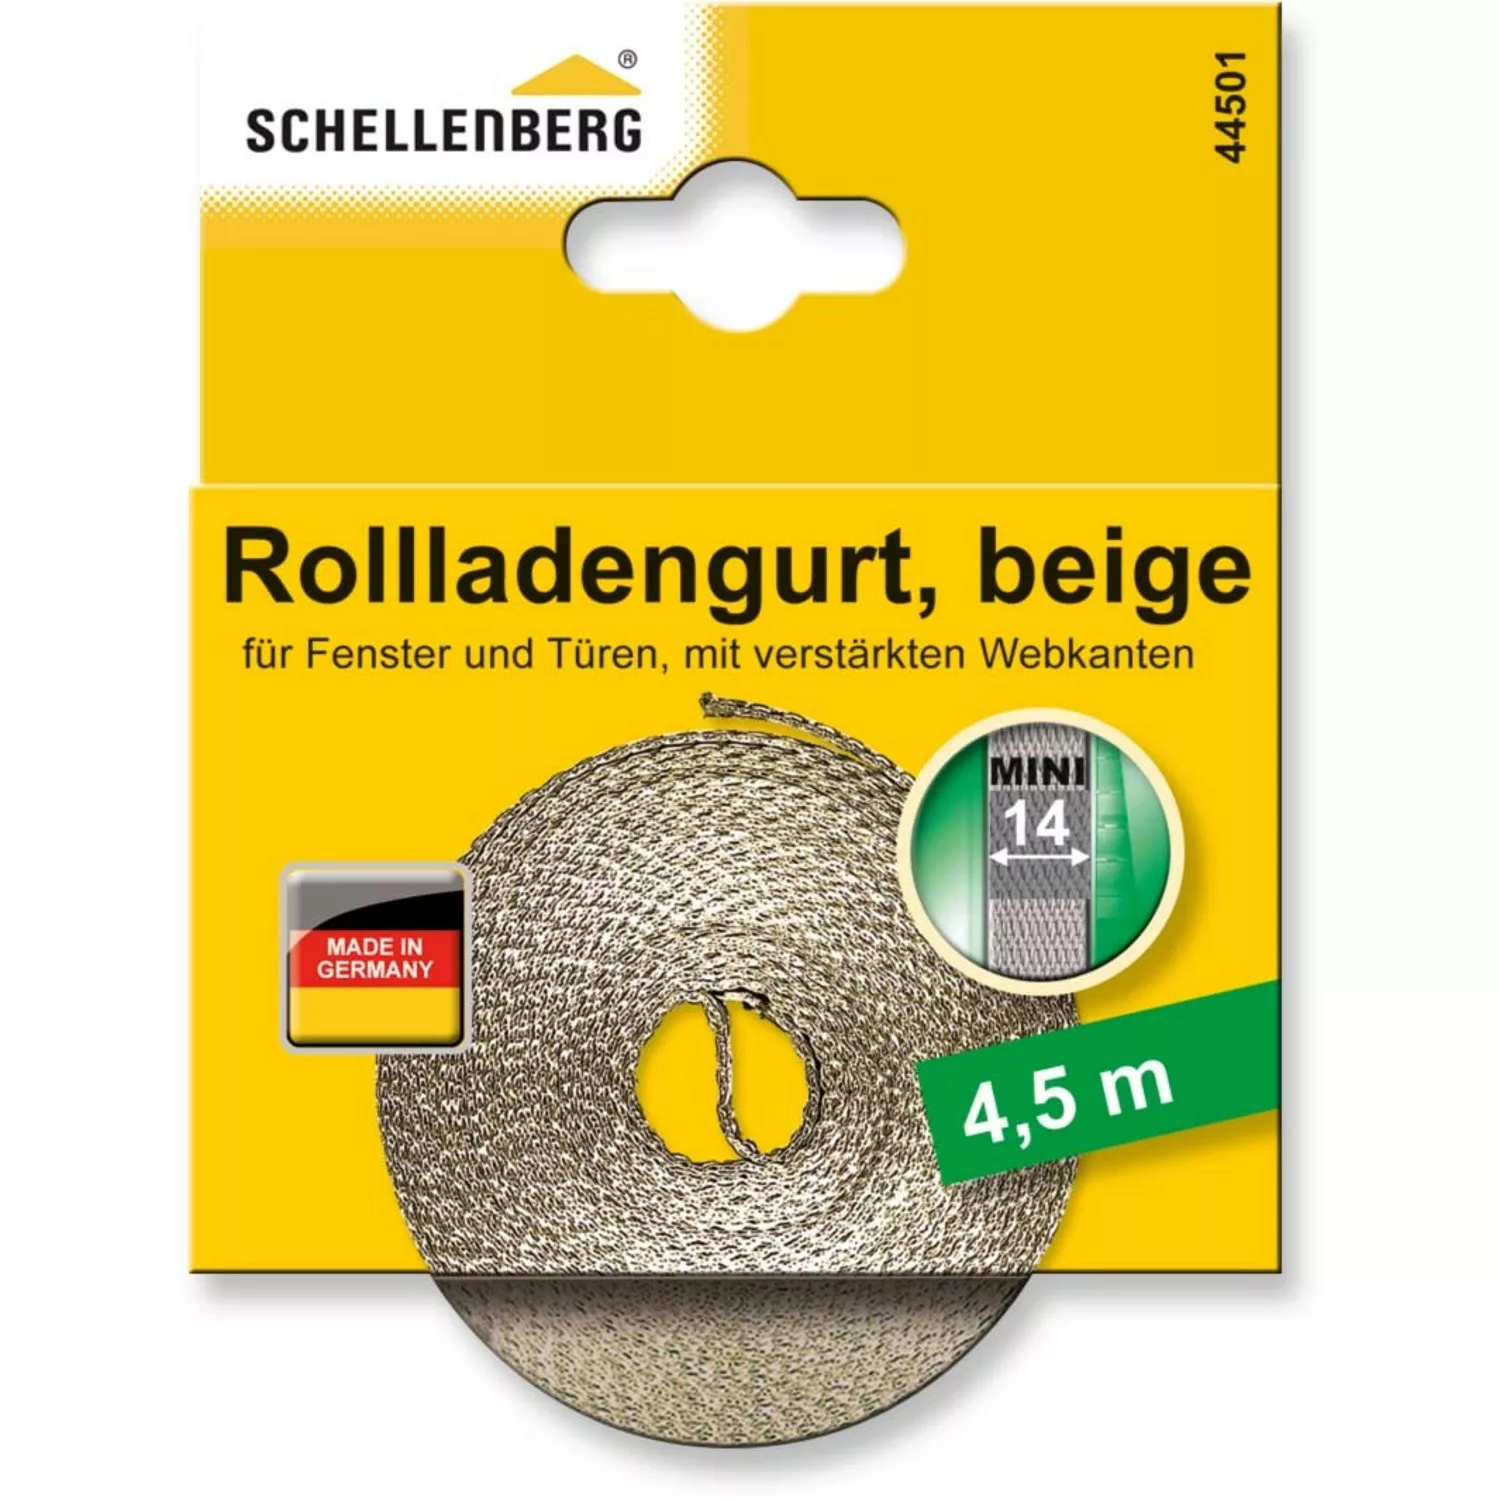 Schellenberg Rollladengurt Mini 14 mm 4,5 m Beige günstig online kaufen